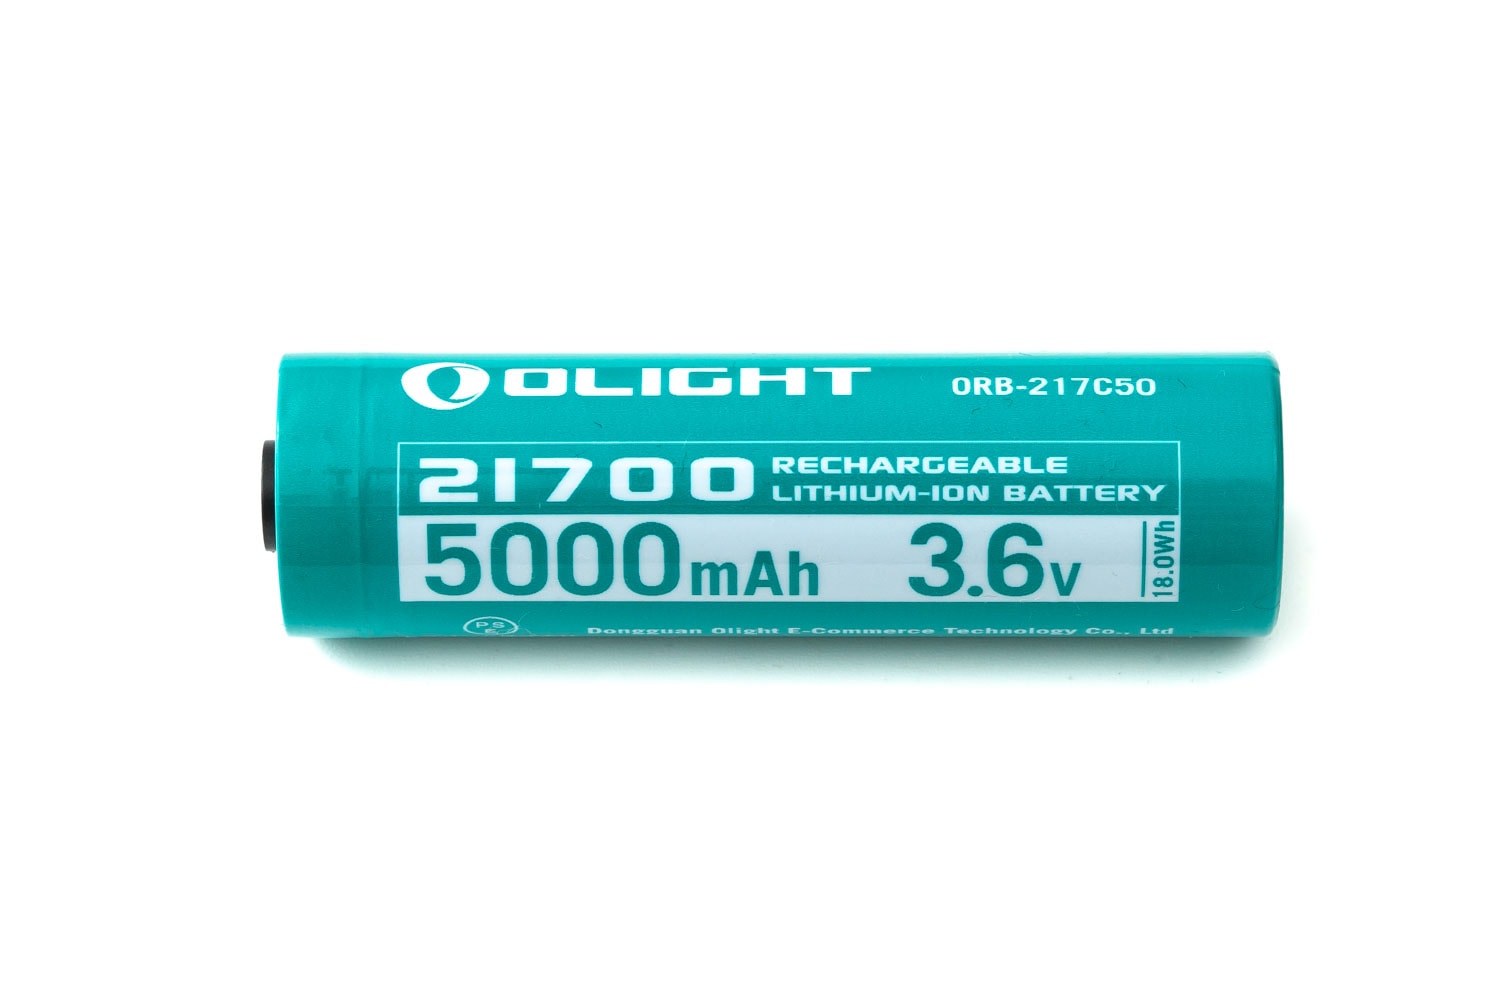 Olight ORB-217C50 21700 battery